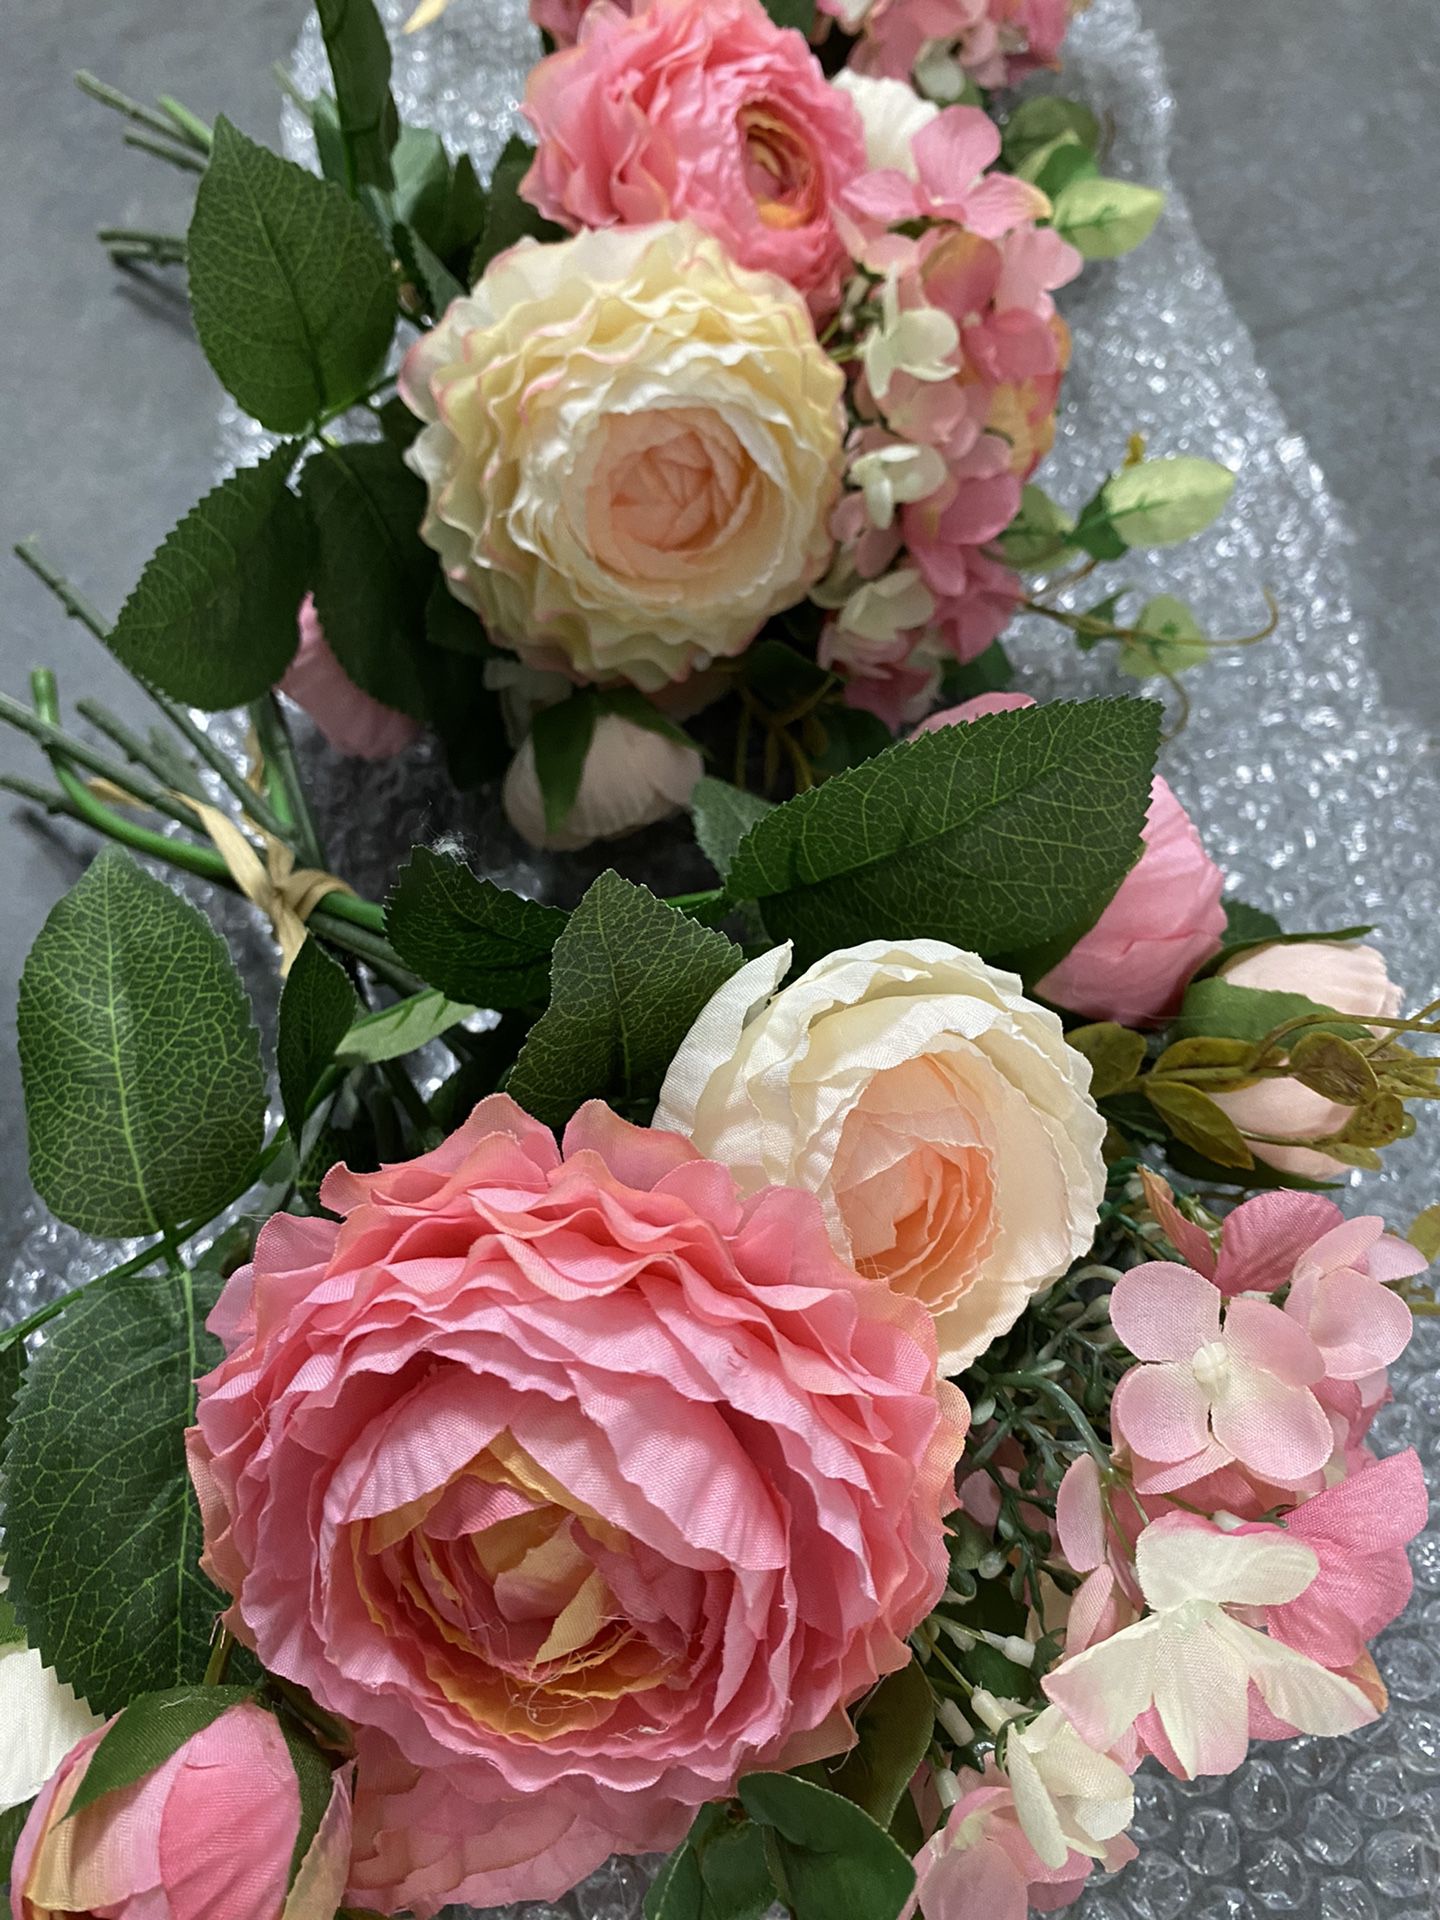 3-Bouquet Bundle Artificial Plastic Silk Flowers for Home Decor Weddings Events